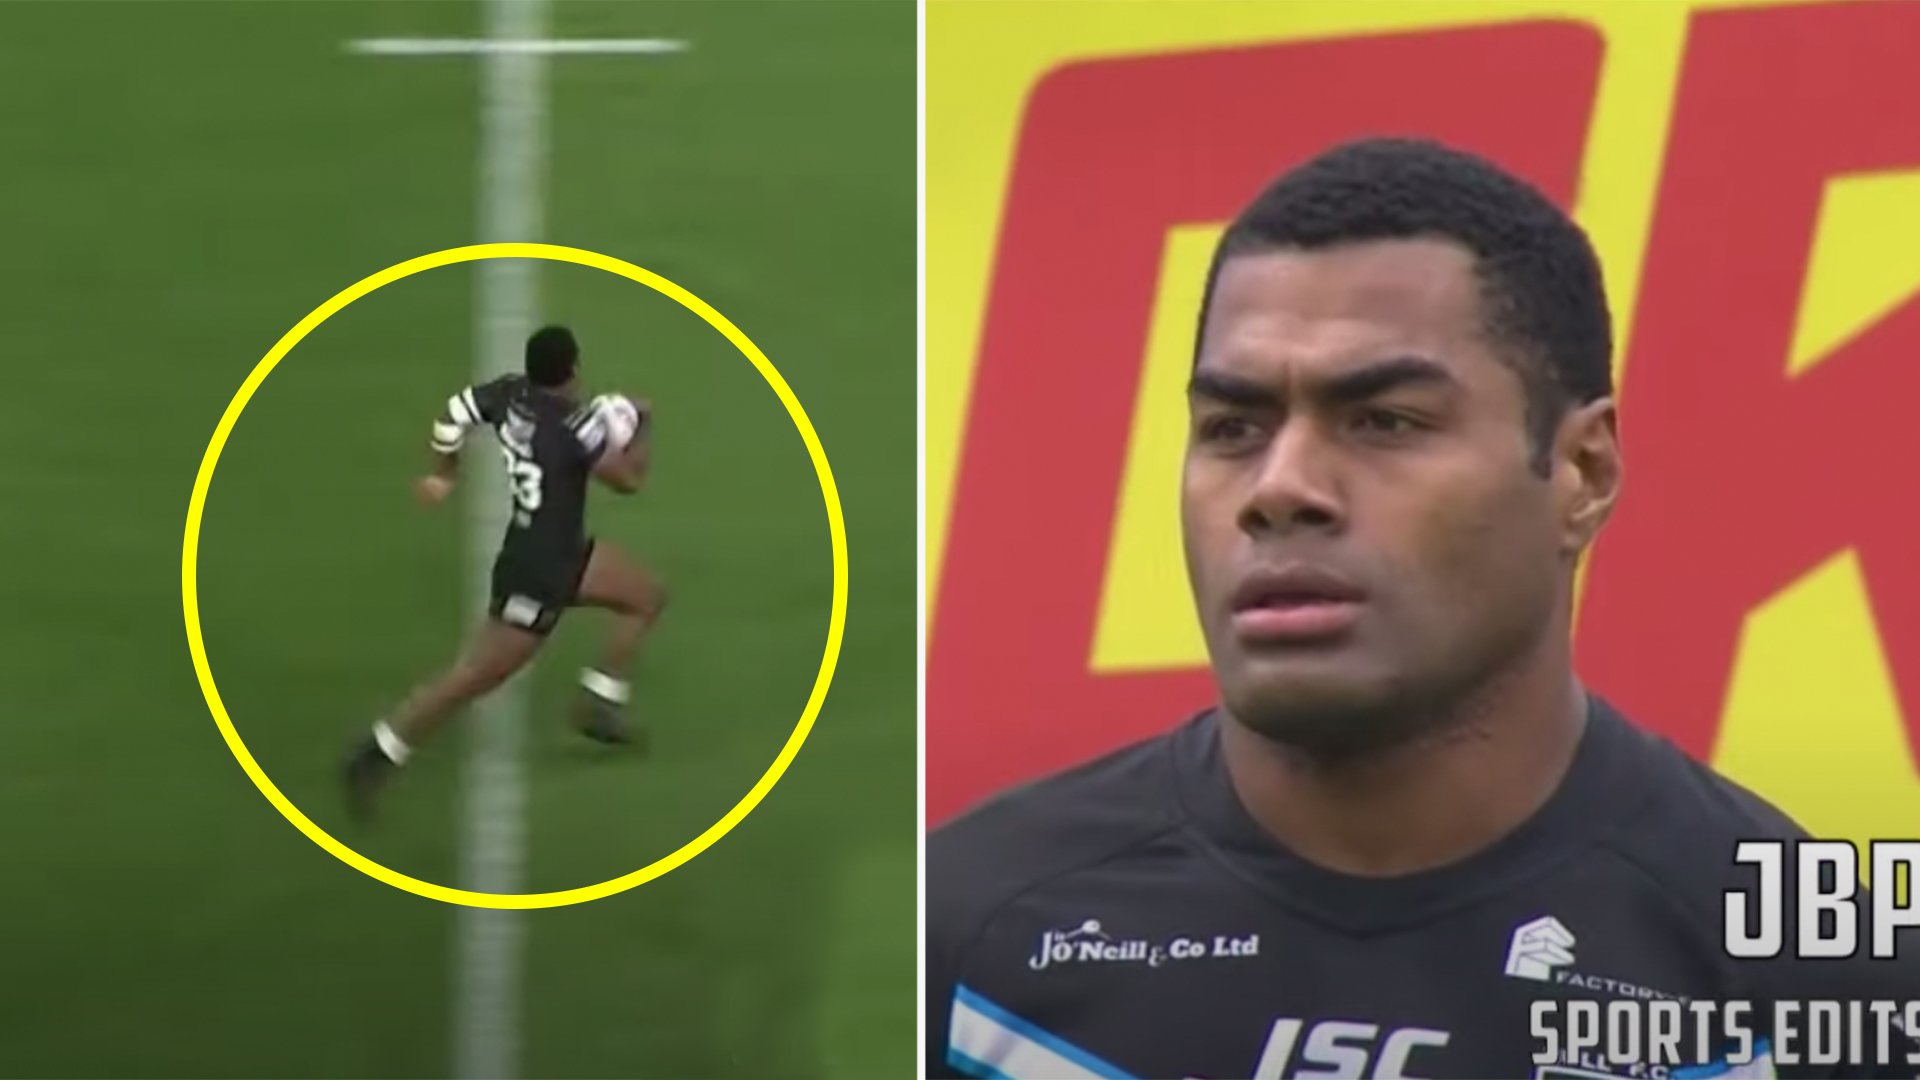 The terrifying highlight reel of Bristol Bear's new Fijian signing